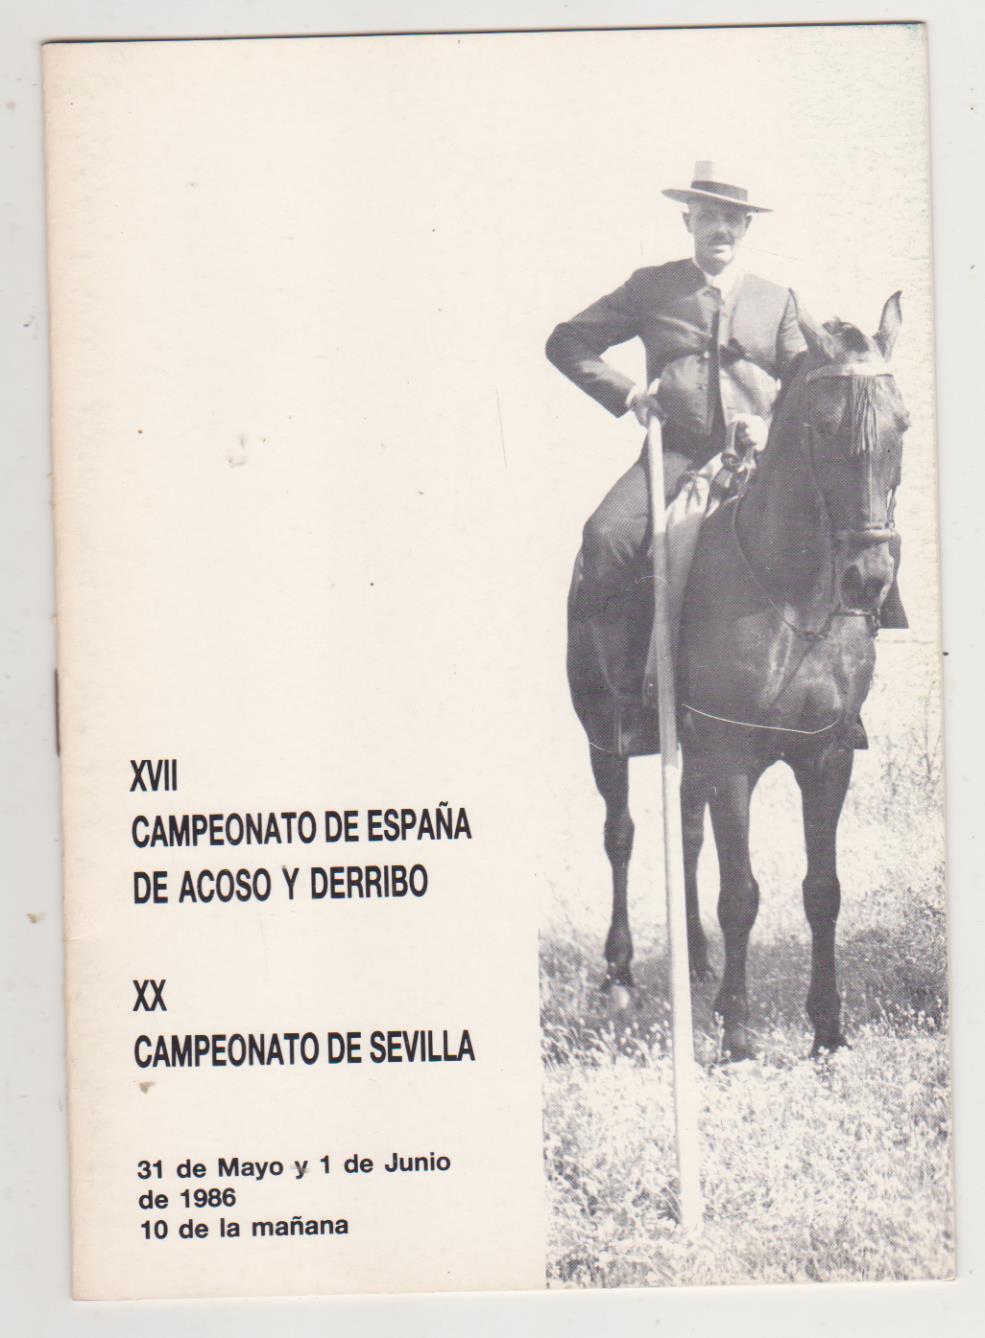 XVII Campeonato de España de Acoso y derribo . XX Campeonato de Sevilla. 31 de Mayo y 1 de Julio de 1986